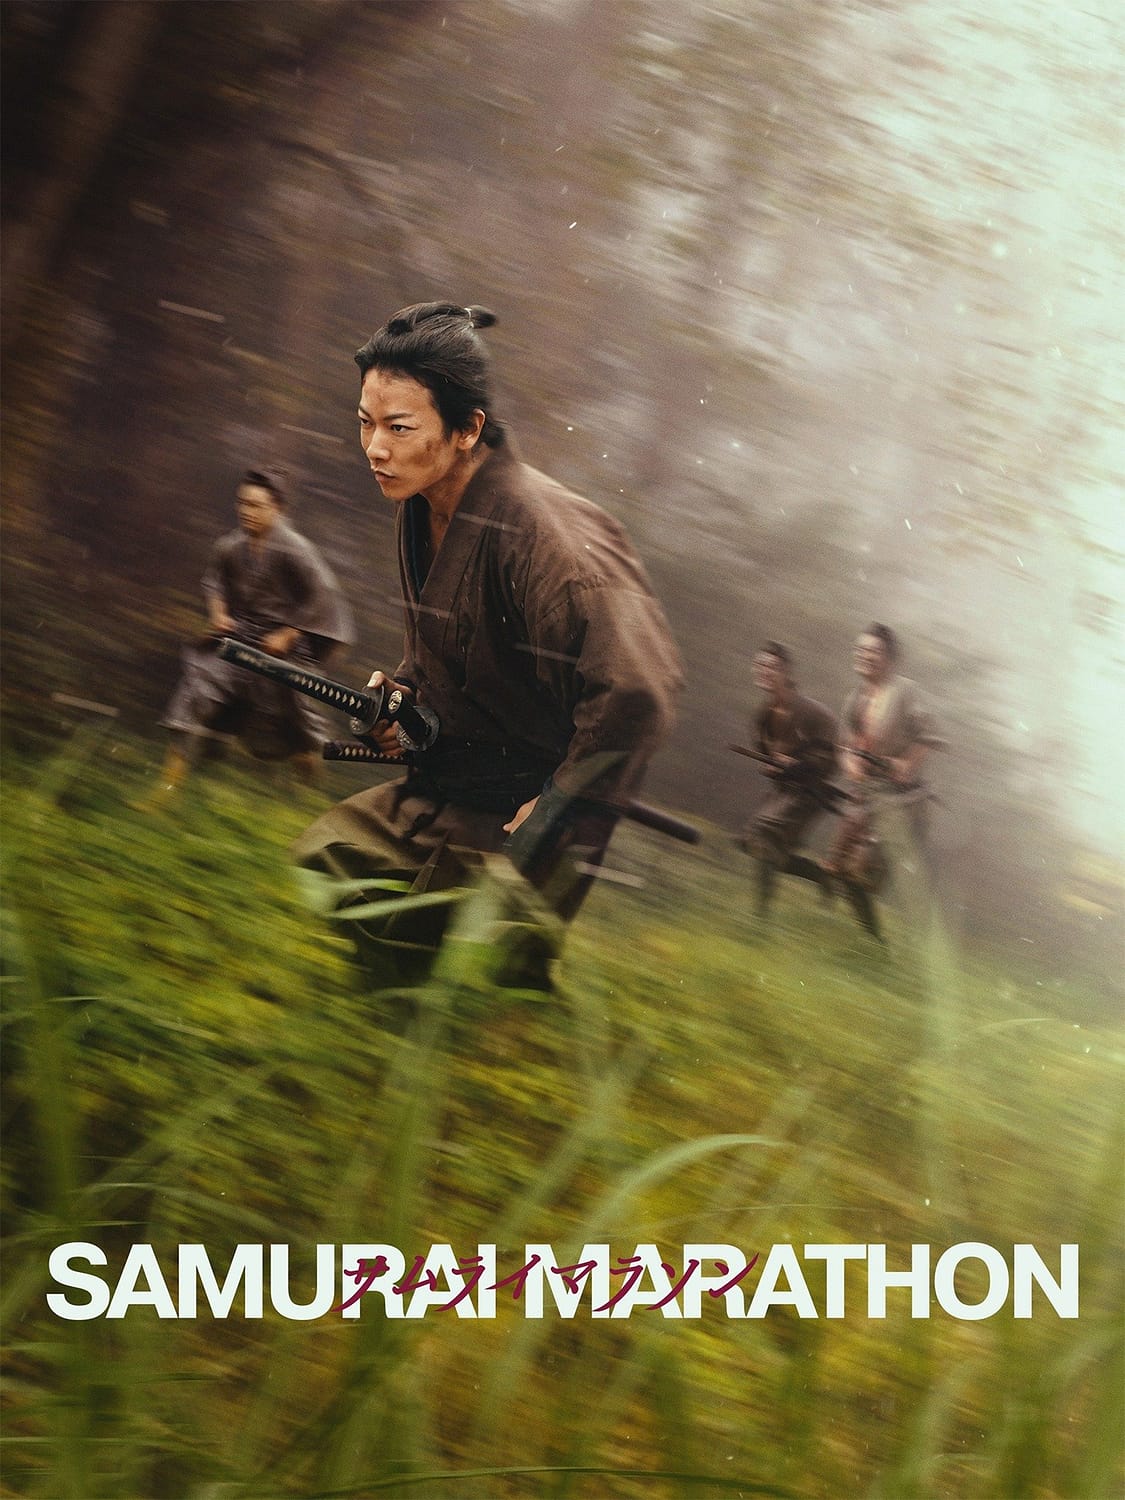 Samurai marason (2019)